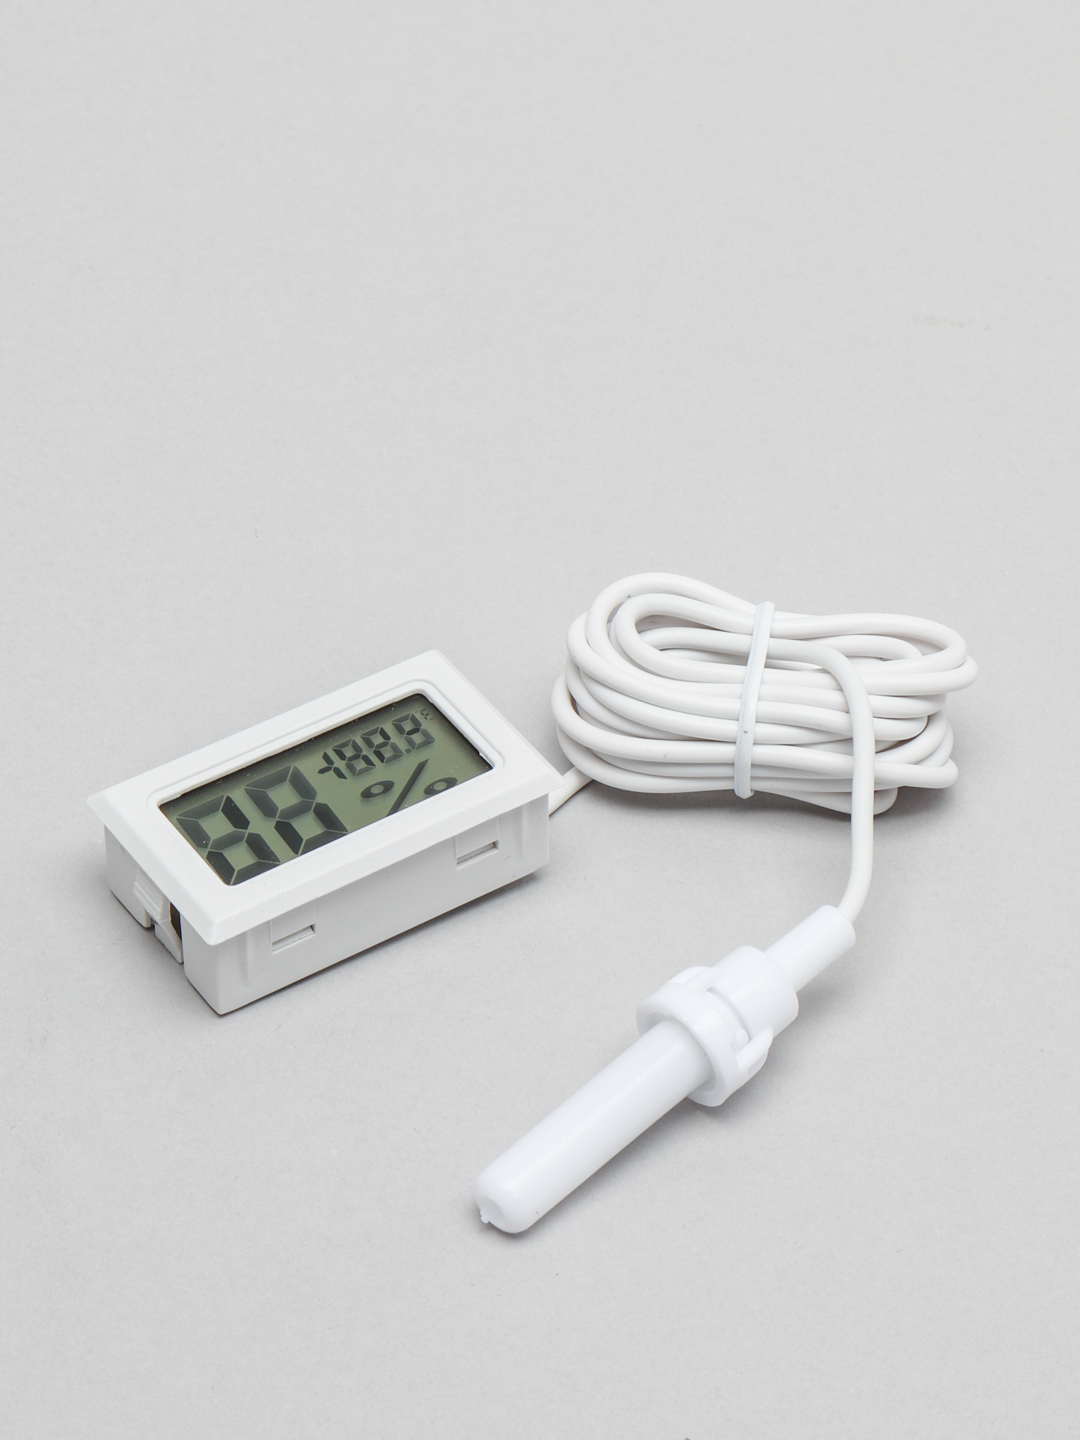  термометр с выносным датчиком температуры за 209.4 ₽  .